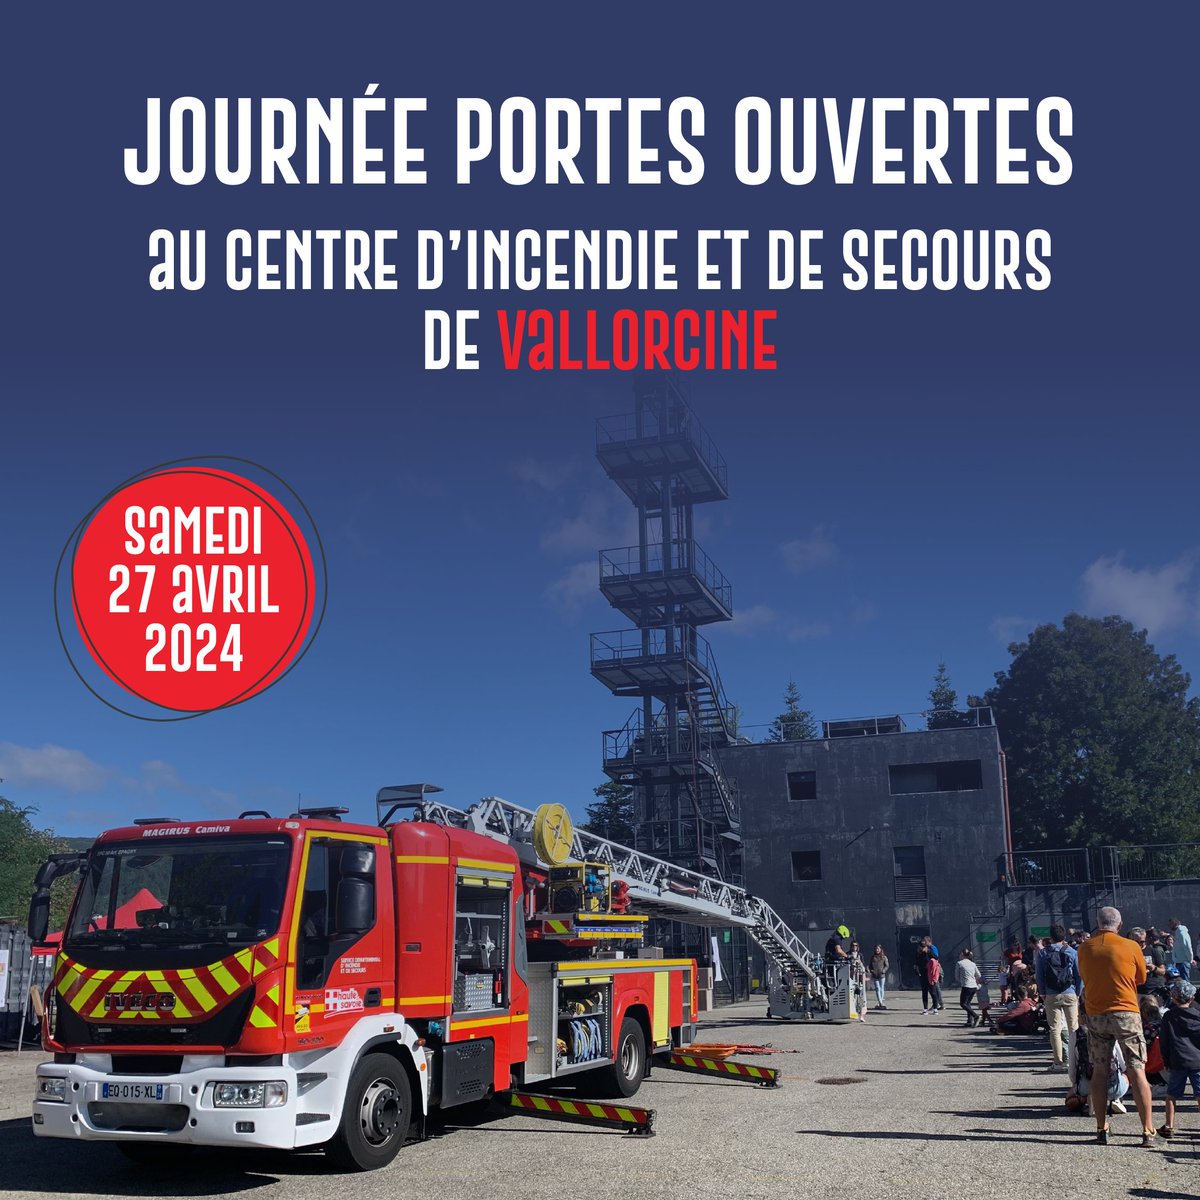 📅 Rendez-vous samedi 27 avril 2024, de 10 h à 17 h, pour la journée portes ouvertes du centre d'incendie et de secours de Vallorcine.
Plongez, le temps d’une journée, dans l’univers et le quotidien des sapeurs-pompiers de Vallorcine.
#Vallorcine #Pompiers #PortesOuvertes #JPO